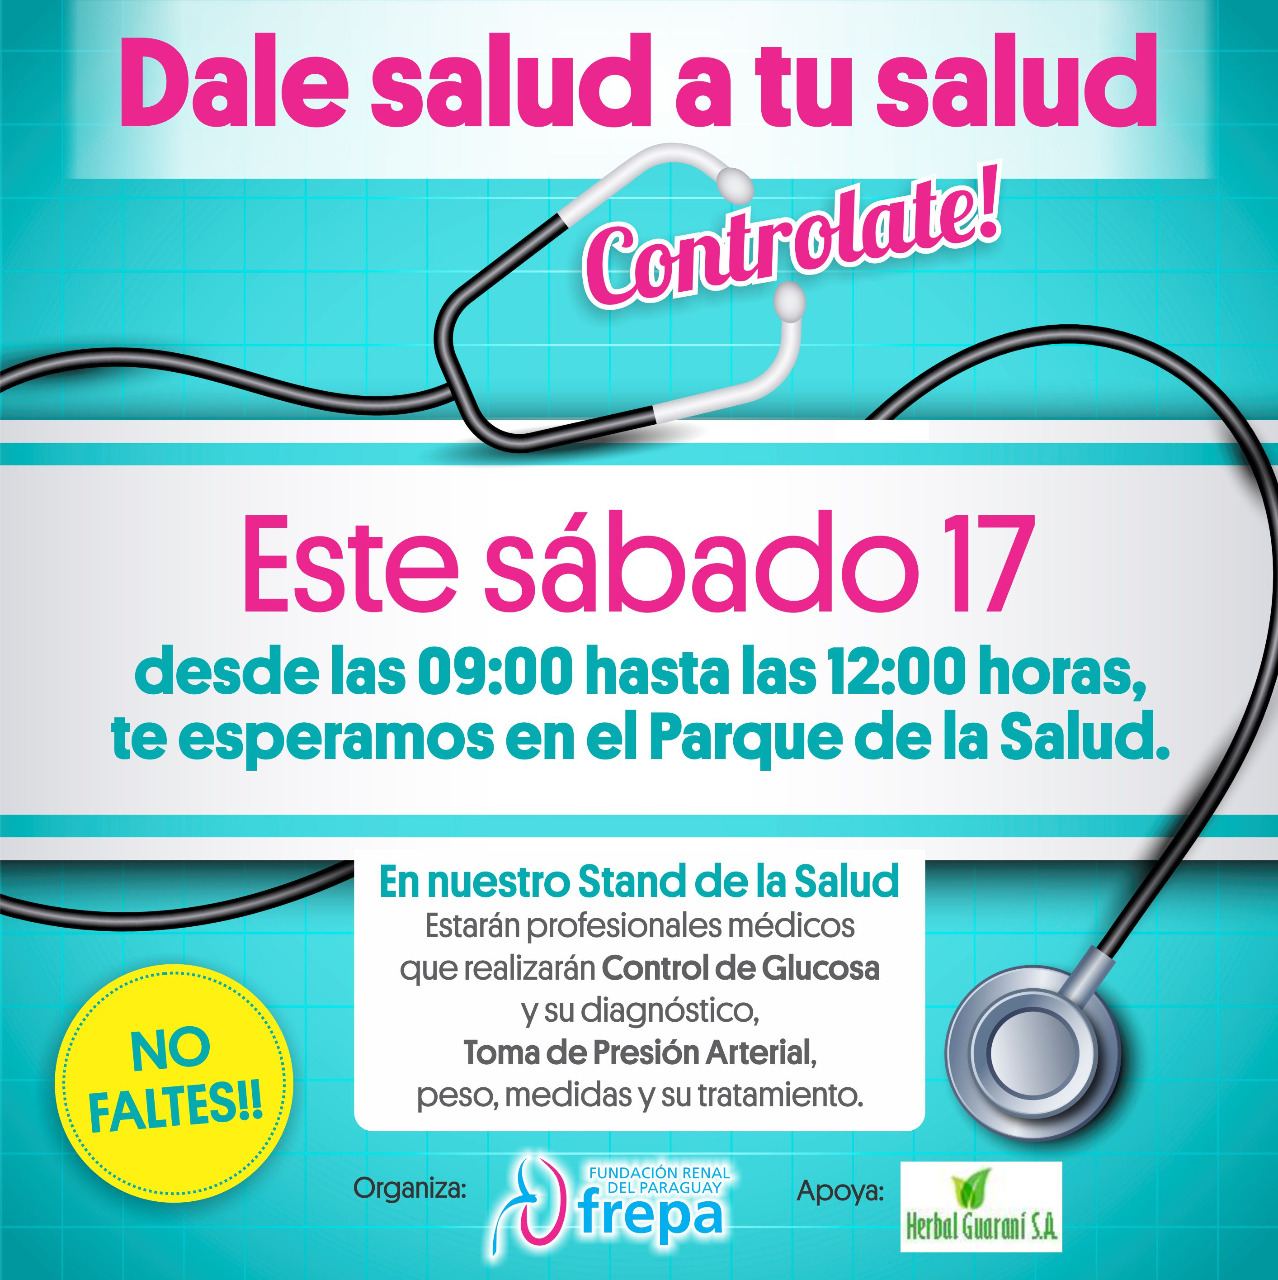 CAMPAÑA DE PREVENCIÓN DE ENFERMEDAD RENAL  “Dale salud a tu salud” se llama el emprendimiento de la Fundación Renal del Paraguay que está encarando con miras a la prevención de enfermedades renales. Esta acción, que cuenta con el apoyo de HERBAL GUARANÍ S.A., se realizará el próximo sábado 17 de junio, de 09:00 a 12:00 horas en el Parque de la Salud de nuestra ciudad capital. En esa oportunidad, médicos, enfermeras y profesionales de blanco, estarán a disposición de las personas que concurran al citado lugar para realizar, en forma totalmente gratuita, control de glucosa y presión arterial. Asimismo, los médicos darán las recomendaciones pertinentes para aquellas personas que deban realizar tratamientos posteriores. Los principales factores que generan problemas renales son la presión alta y la diabetes. Para mantener una vida saludable, se recomienda realizar un chequeo médico por lo menos dos veces al año, además de evitar la obesidad, realizar ejercicios físicos cotidianos, disminuir el consumo de sal e ingerir una alimentación adecuada. Este emprendimiento es parte de una campaña que habrá de realizarse periódicamente y está dirigido a niños, jóvenes y adultos que deseen gozar de una buena salud. Las personas que visiten el Parque de la Salud el próximo sábado17, además del control que podrán efectuarse, participarán de un sorteo de premios instituidos por HERBAL GUARANI S.A. Les esperamos!! 